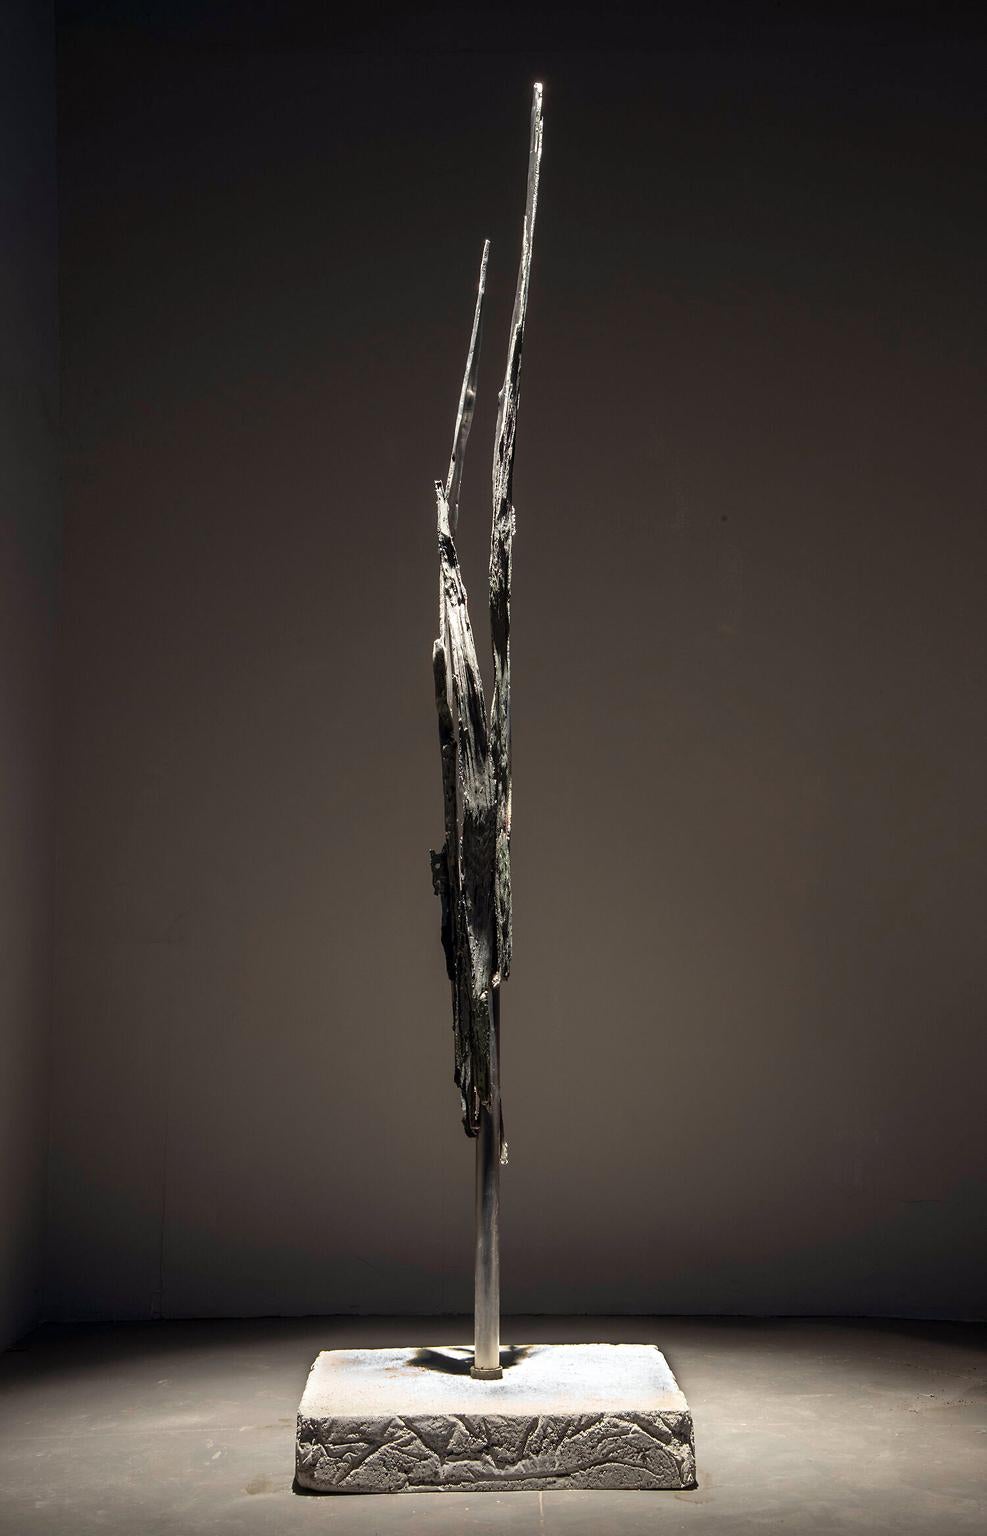 "Flash" par John Ruppert
Bronze coulé, acier inoxydable, à partir d'un fragment d'arbre frappé par la foudre
Edition de 3

Au cours des 35 dernières années, John Ruppert a travaillé avec des métaux coulés, des matériaux manufacturés tels que le